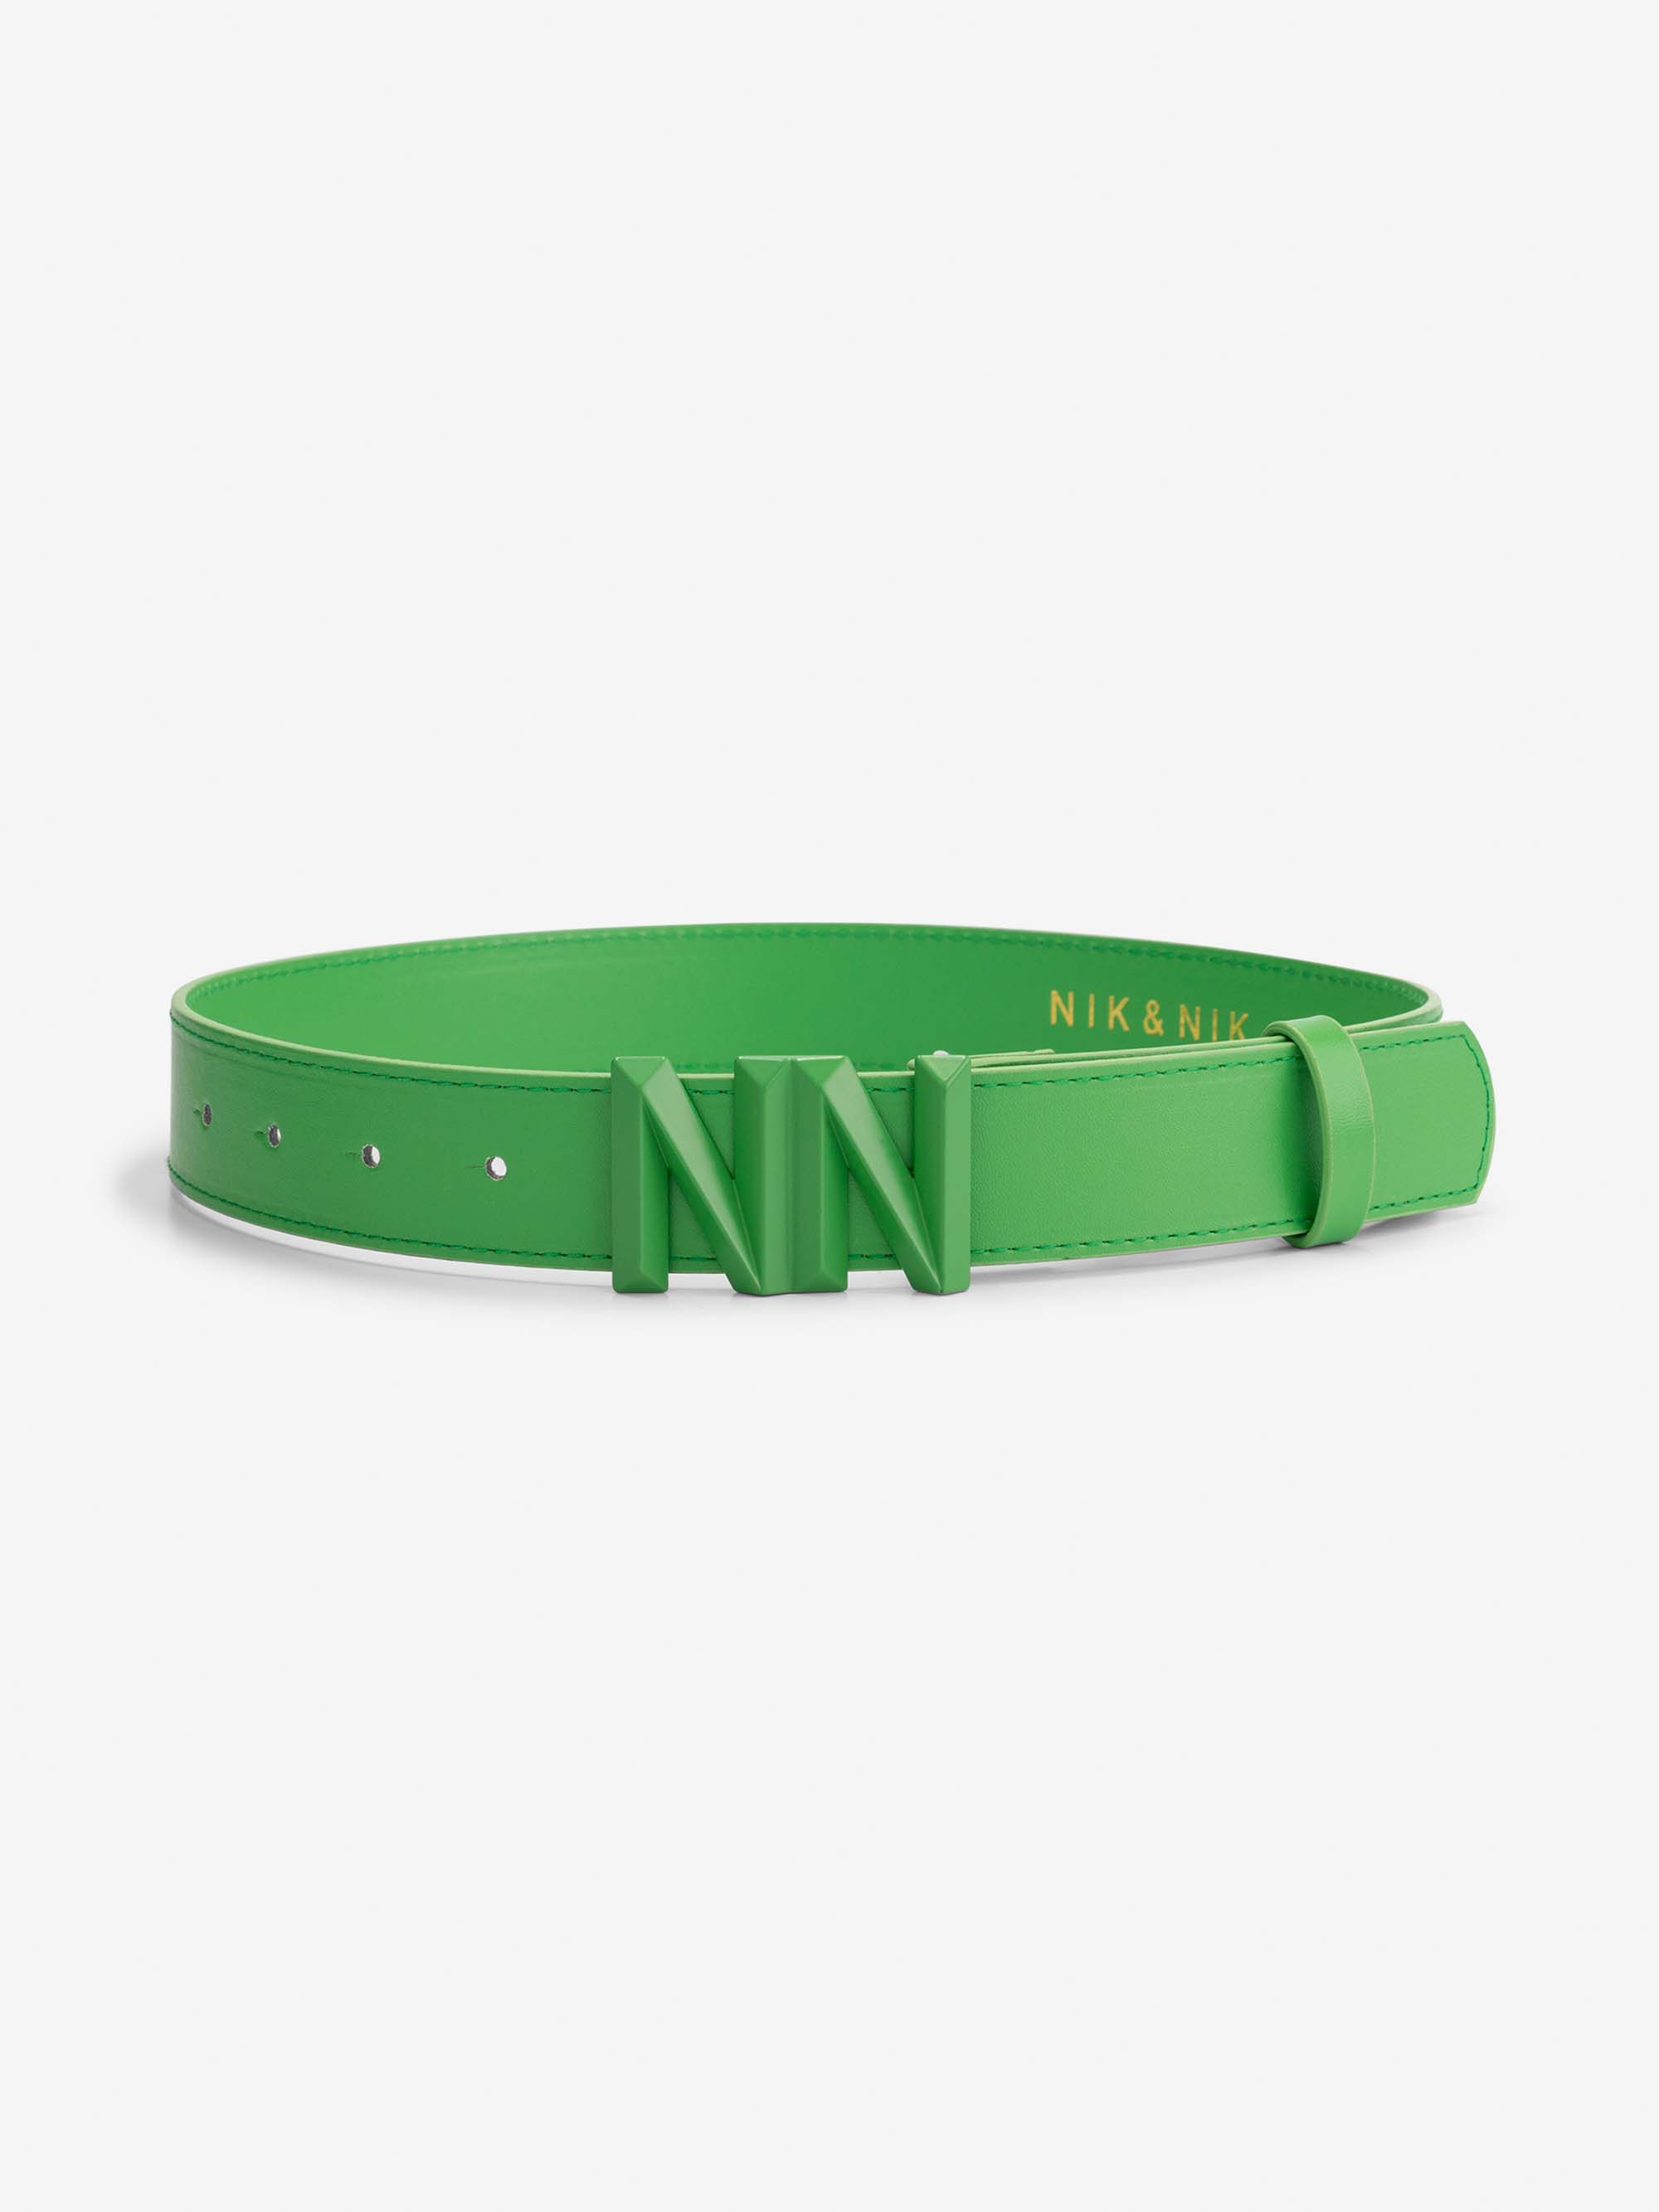  NN waist belt